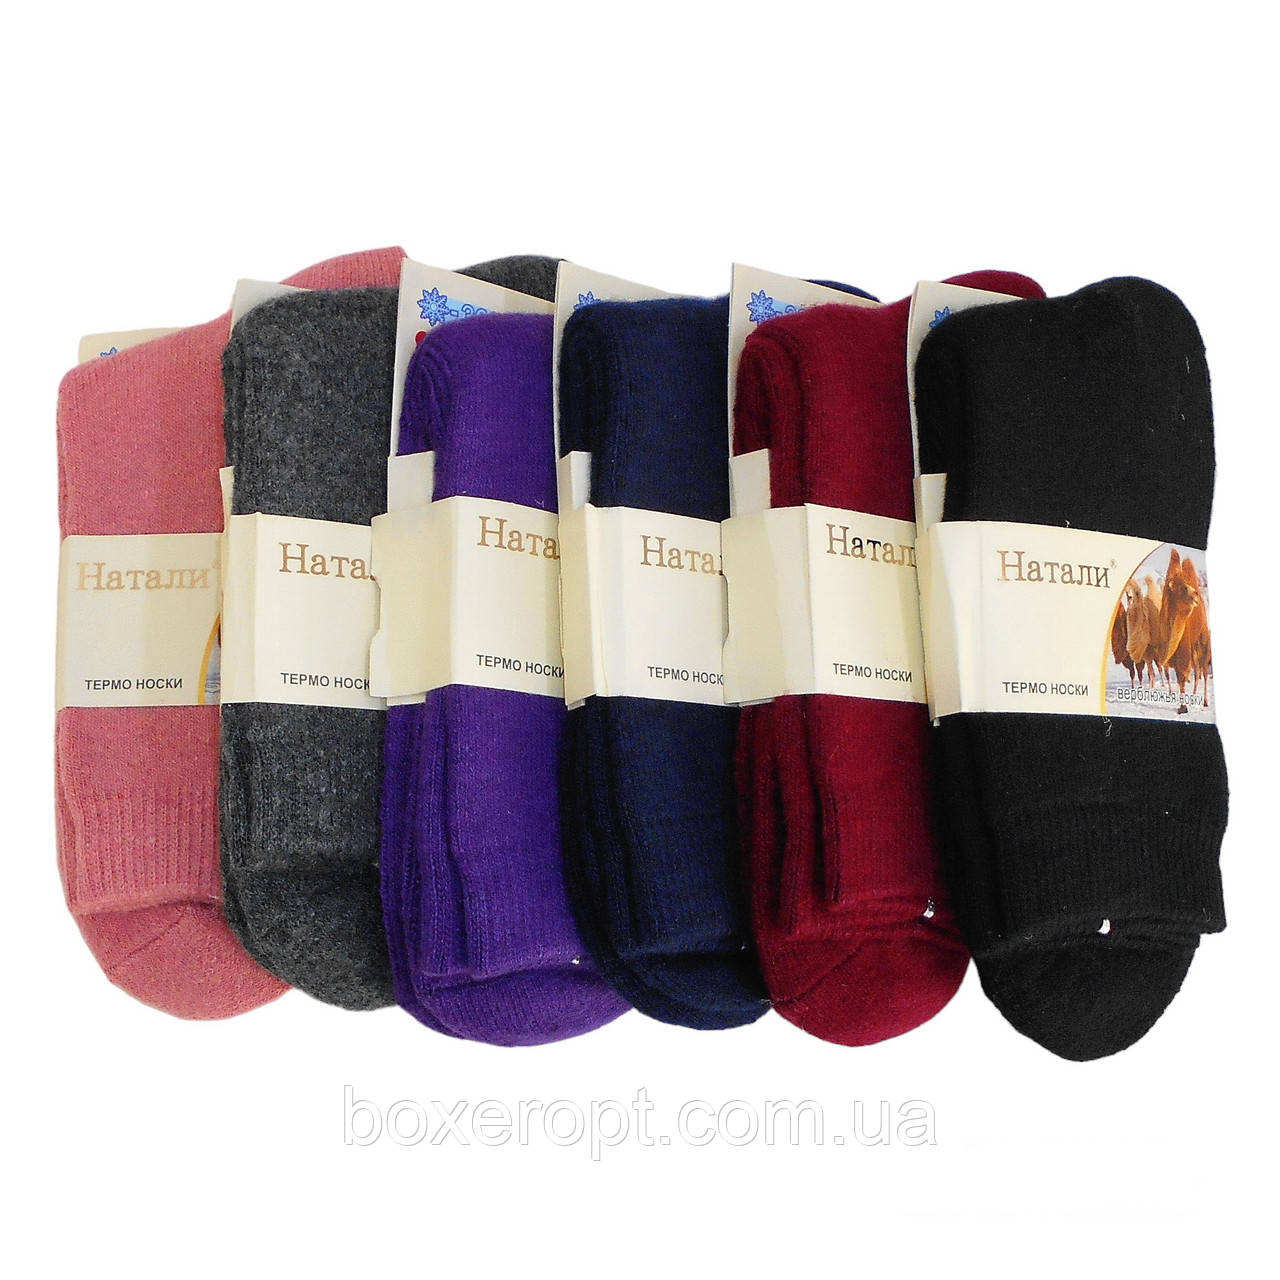 Жіночі шерстяні шкарпетки з махрою Наталі - 34.00 грн./пара (No.B938-7)